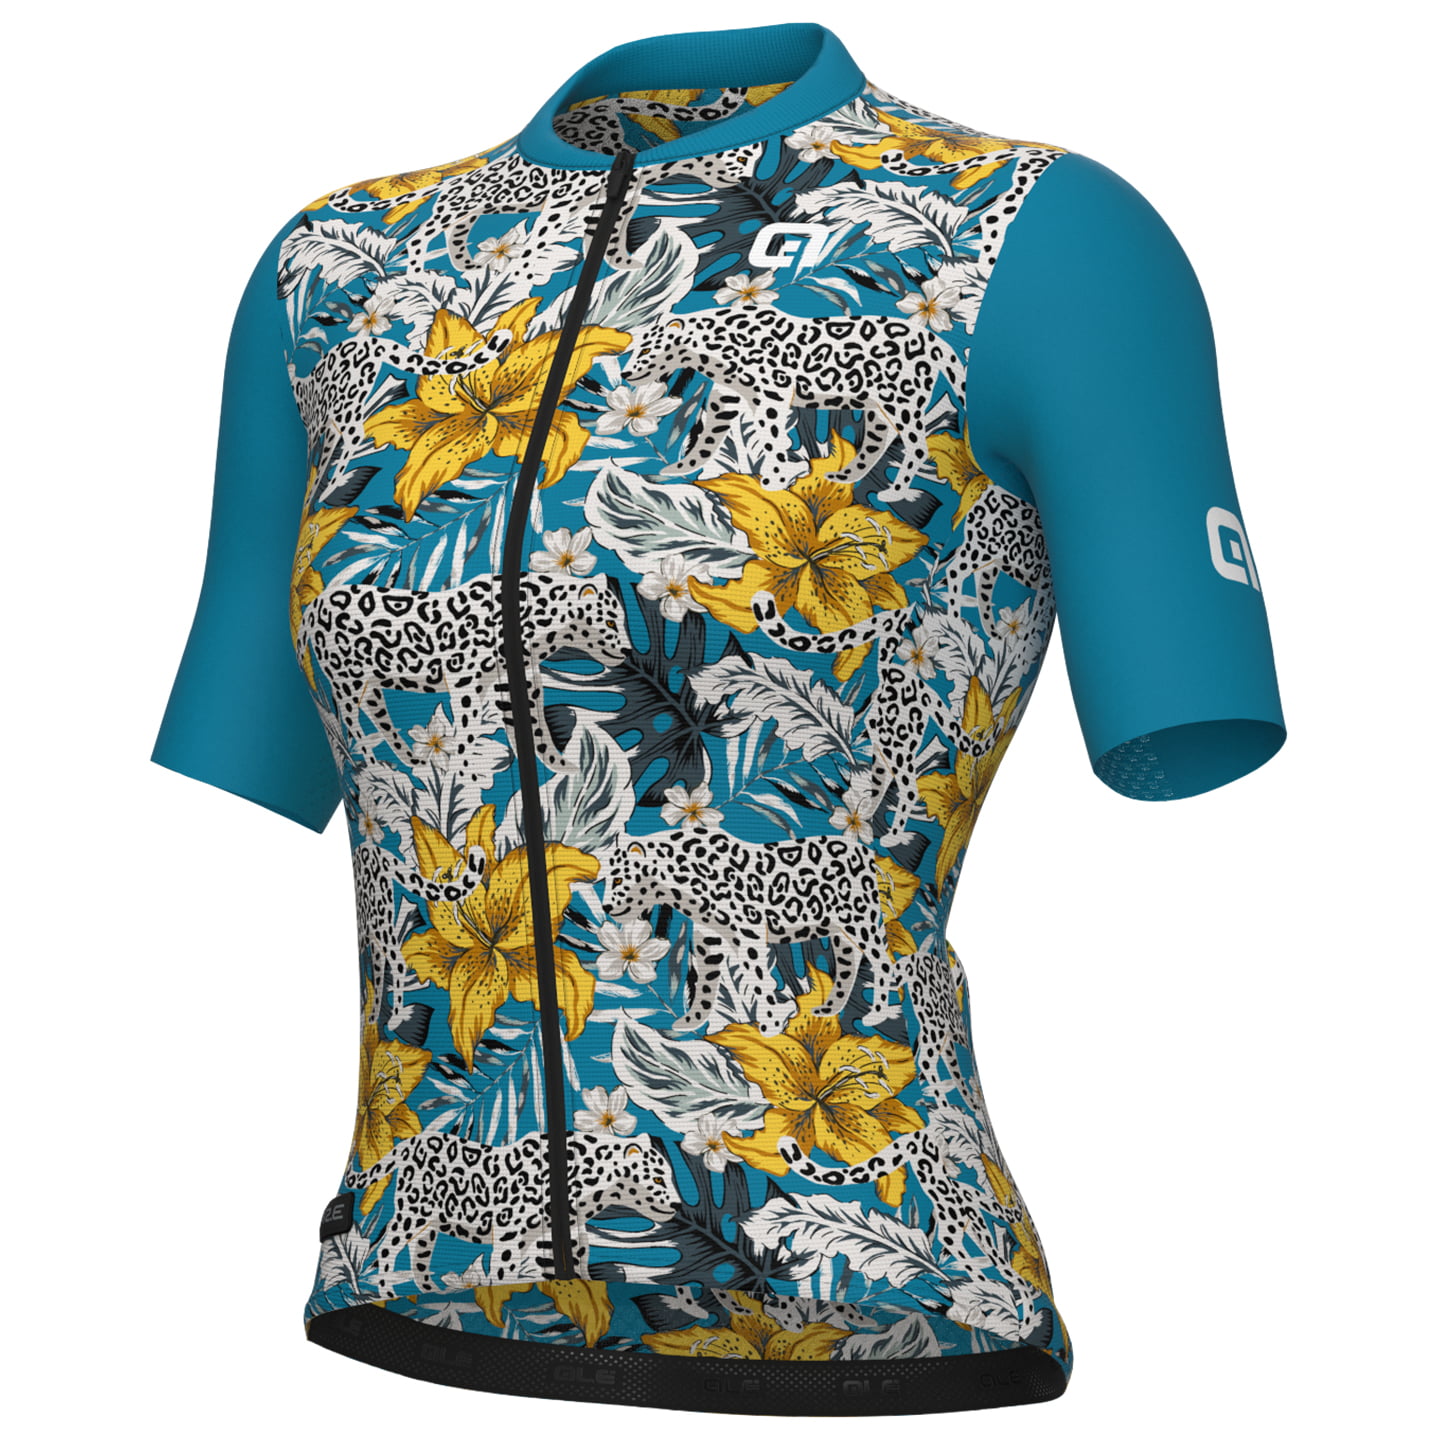 ALE Hibiscus Women’s Jersey Women’s Short Sleeve Jersey, size XL, Cycle jersey, Bike gear